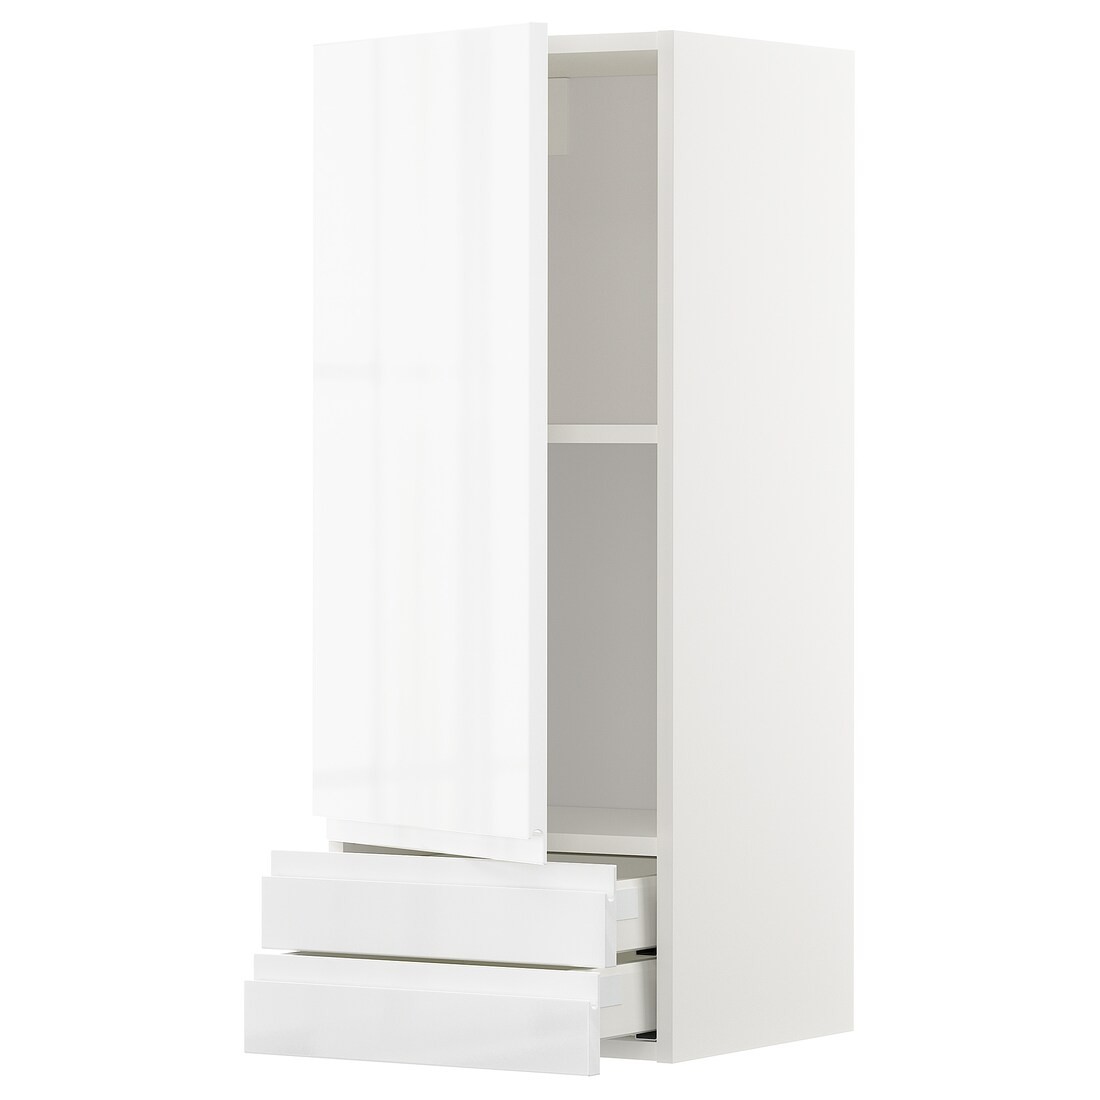 IKEA METOD МЕТОД / MAXIMERA МАКСИМЕРА Настенный шкаф, дверь / 2 ящика, белый / Voxtorp глянцевый / белый, 40x100 см 89469715 | 894.697.15